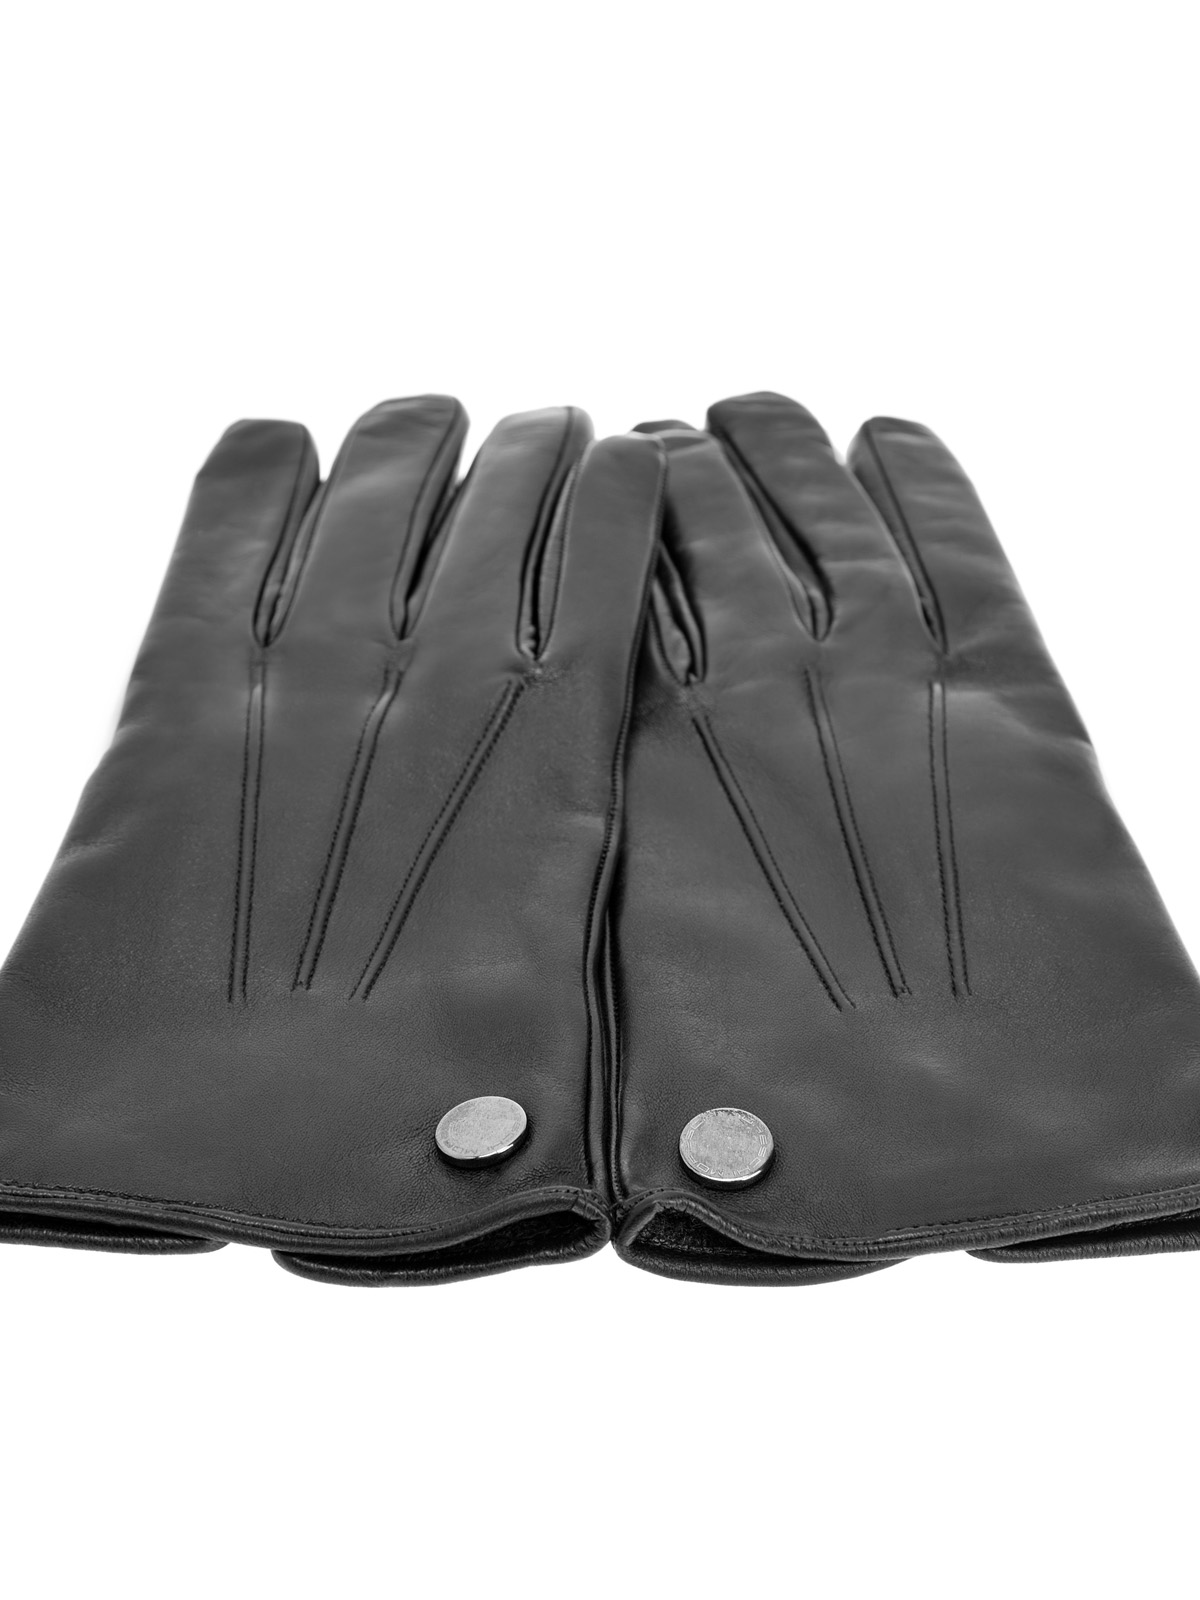 Перчатки из кожи наппа с кашемировой подкладкой MORESCHI, цвет черный, размер L;XS;S;M - фото 2